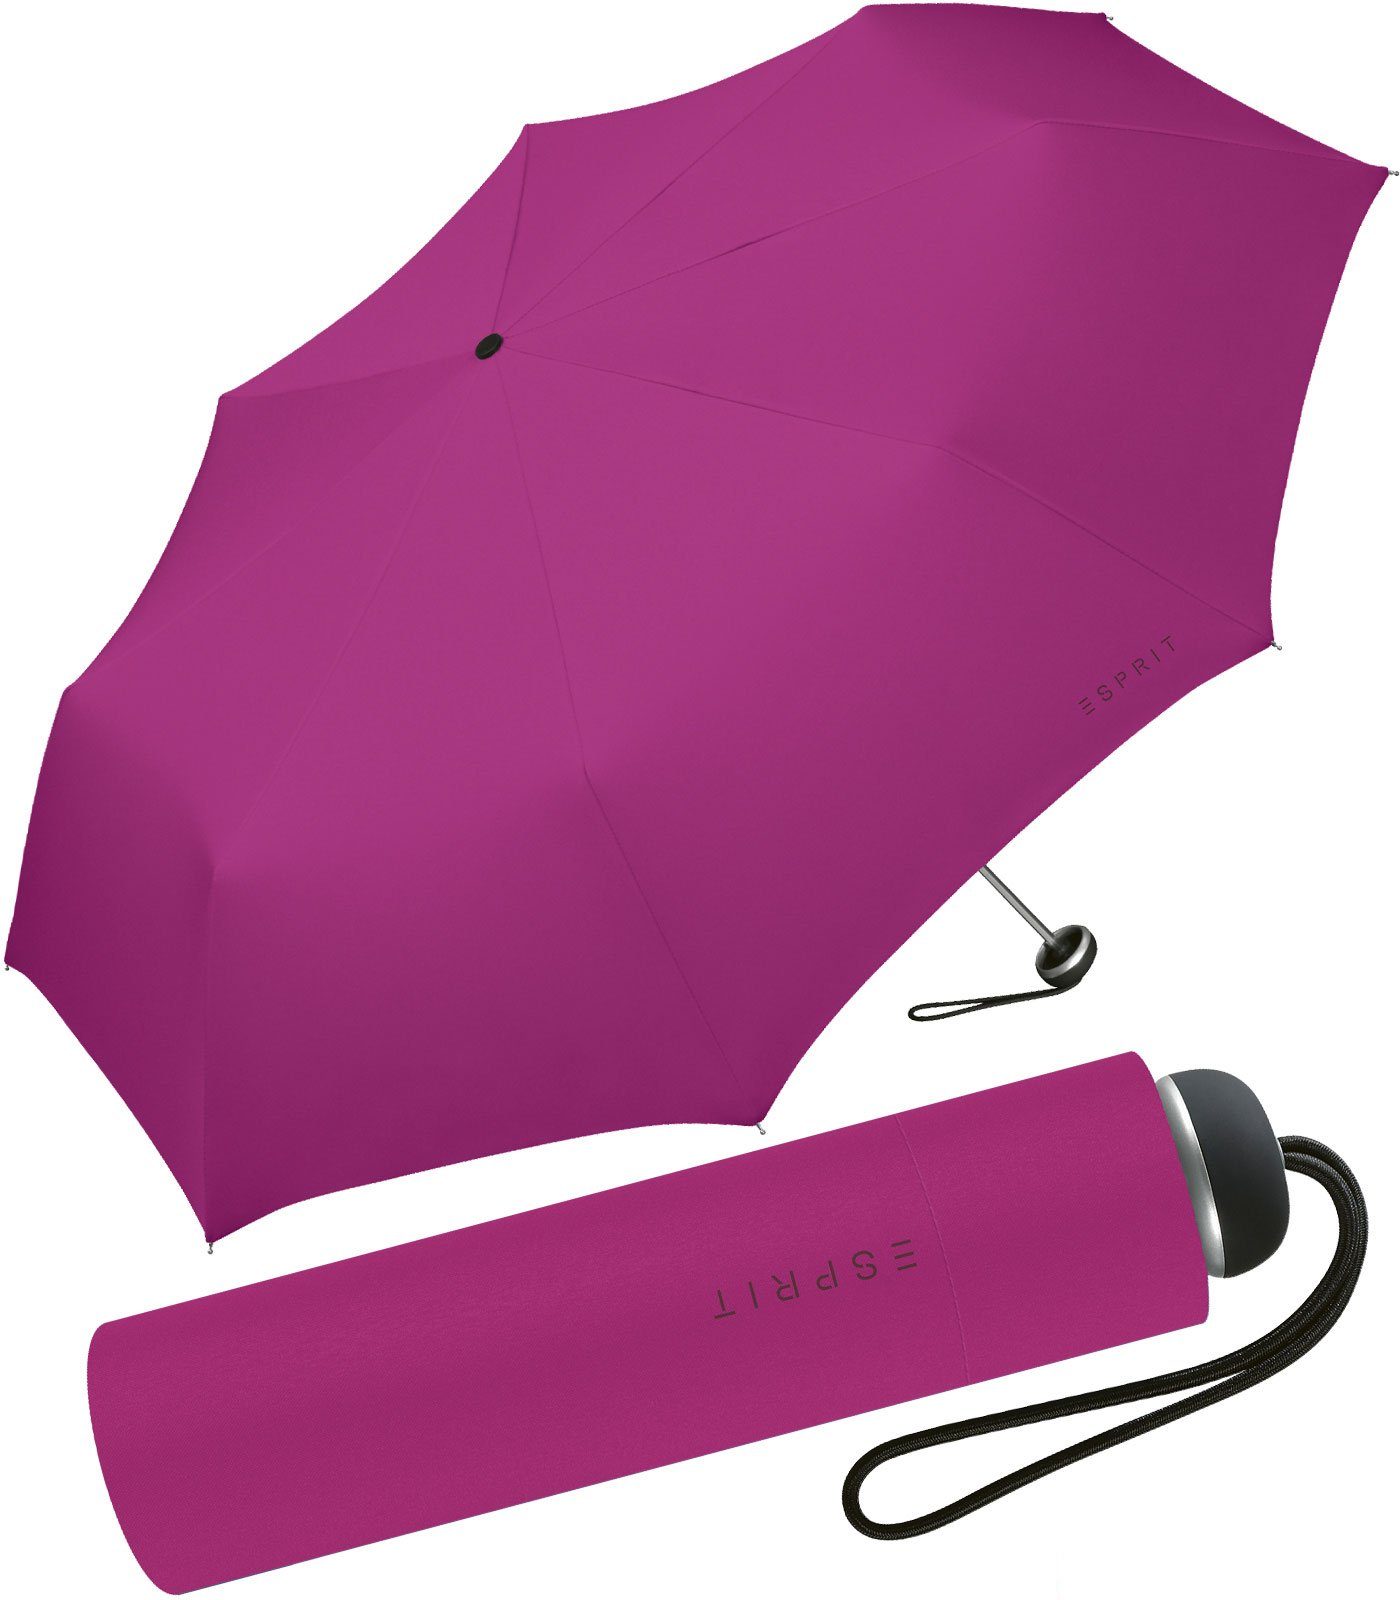 Esprit Taschenregenschirm leichter, handlicher Schirm für Damen, Begleiter  in modischen Farben - festive fuchsia